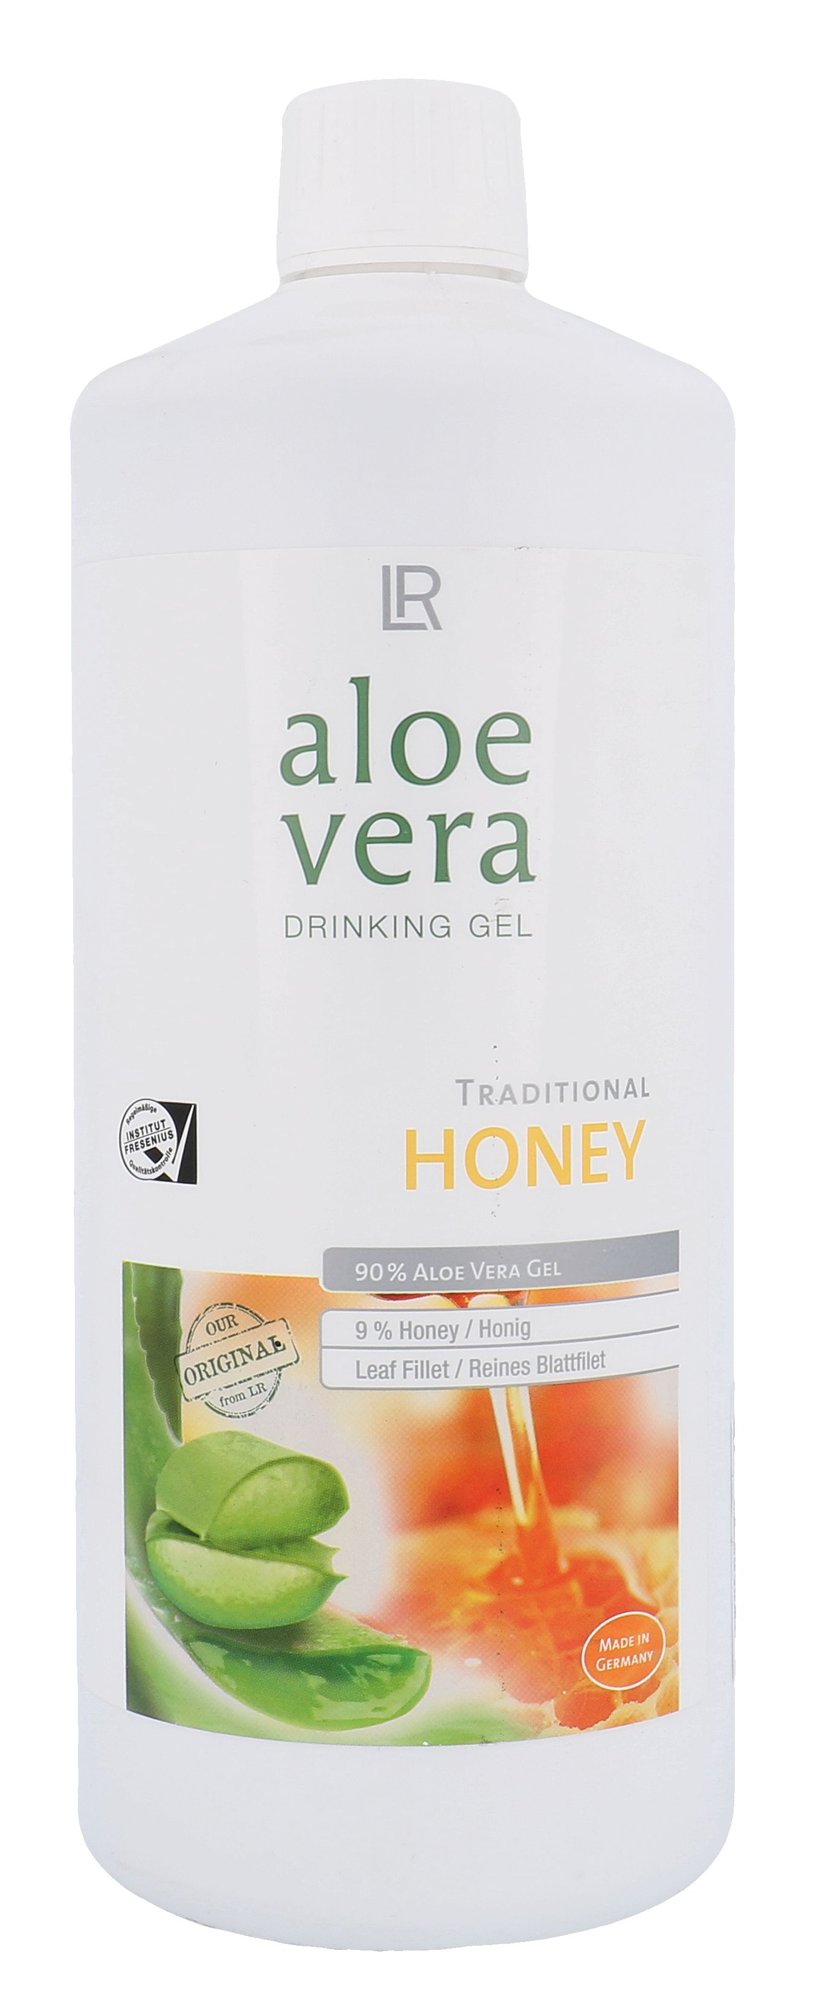 LR Aloe Vera Drinking Gel Honey sveikatos apsaugai